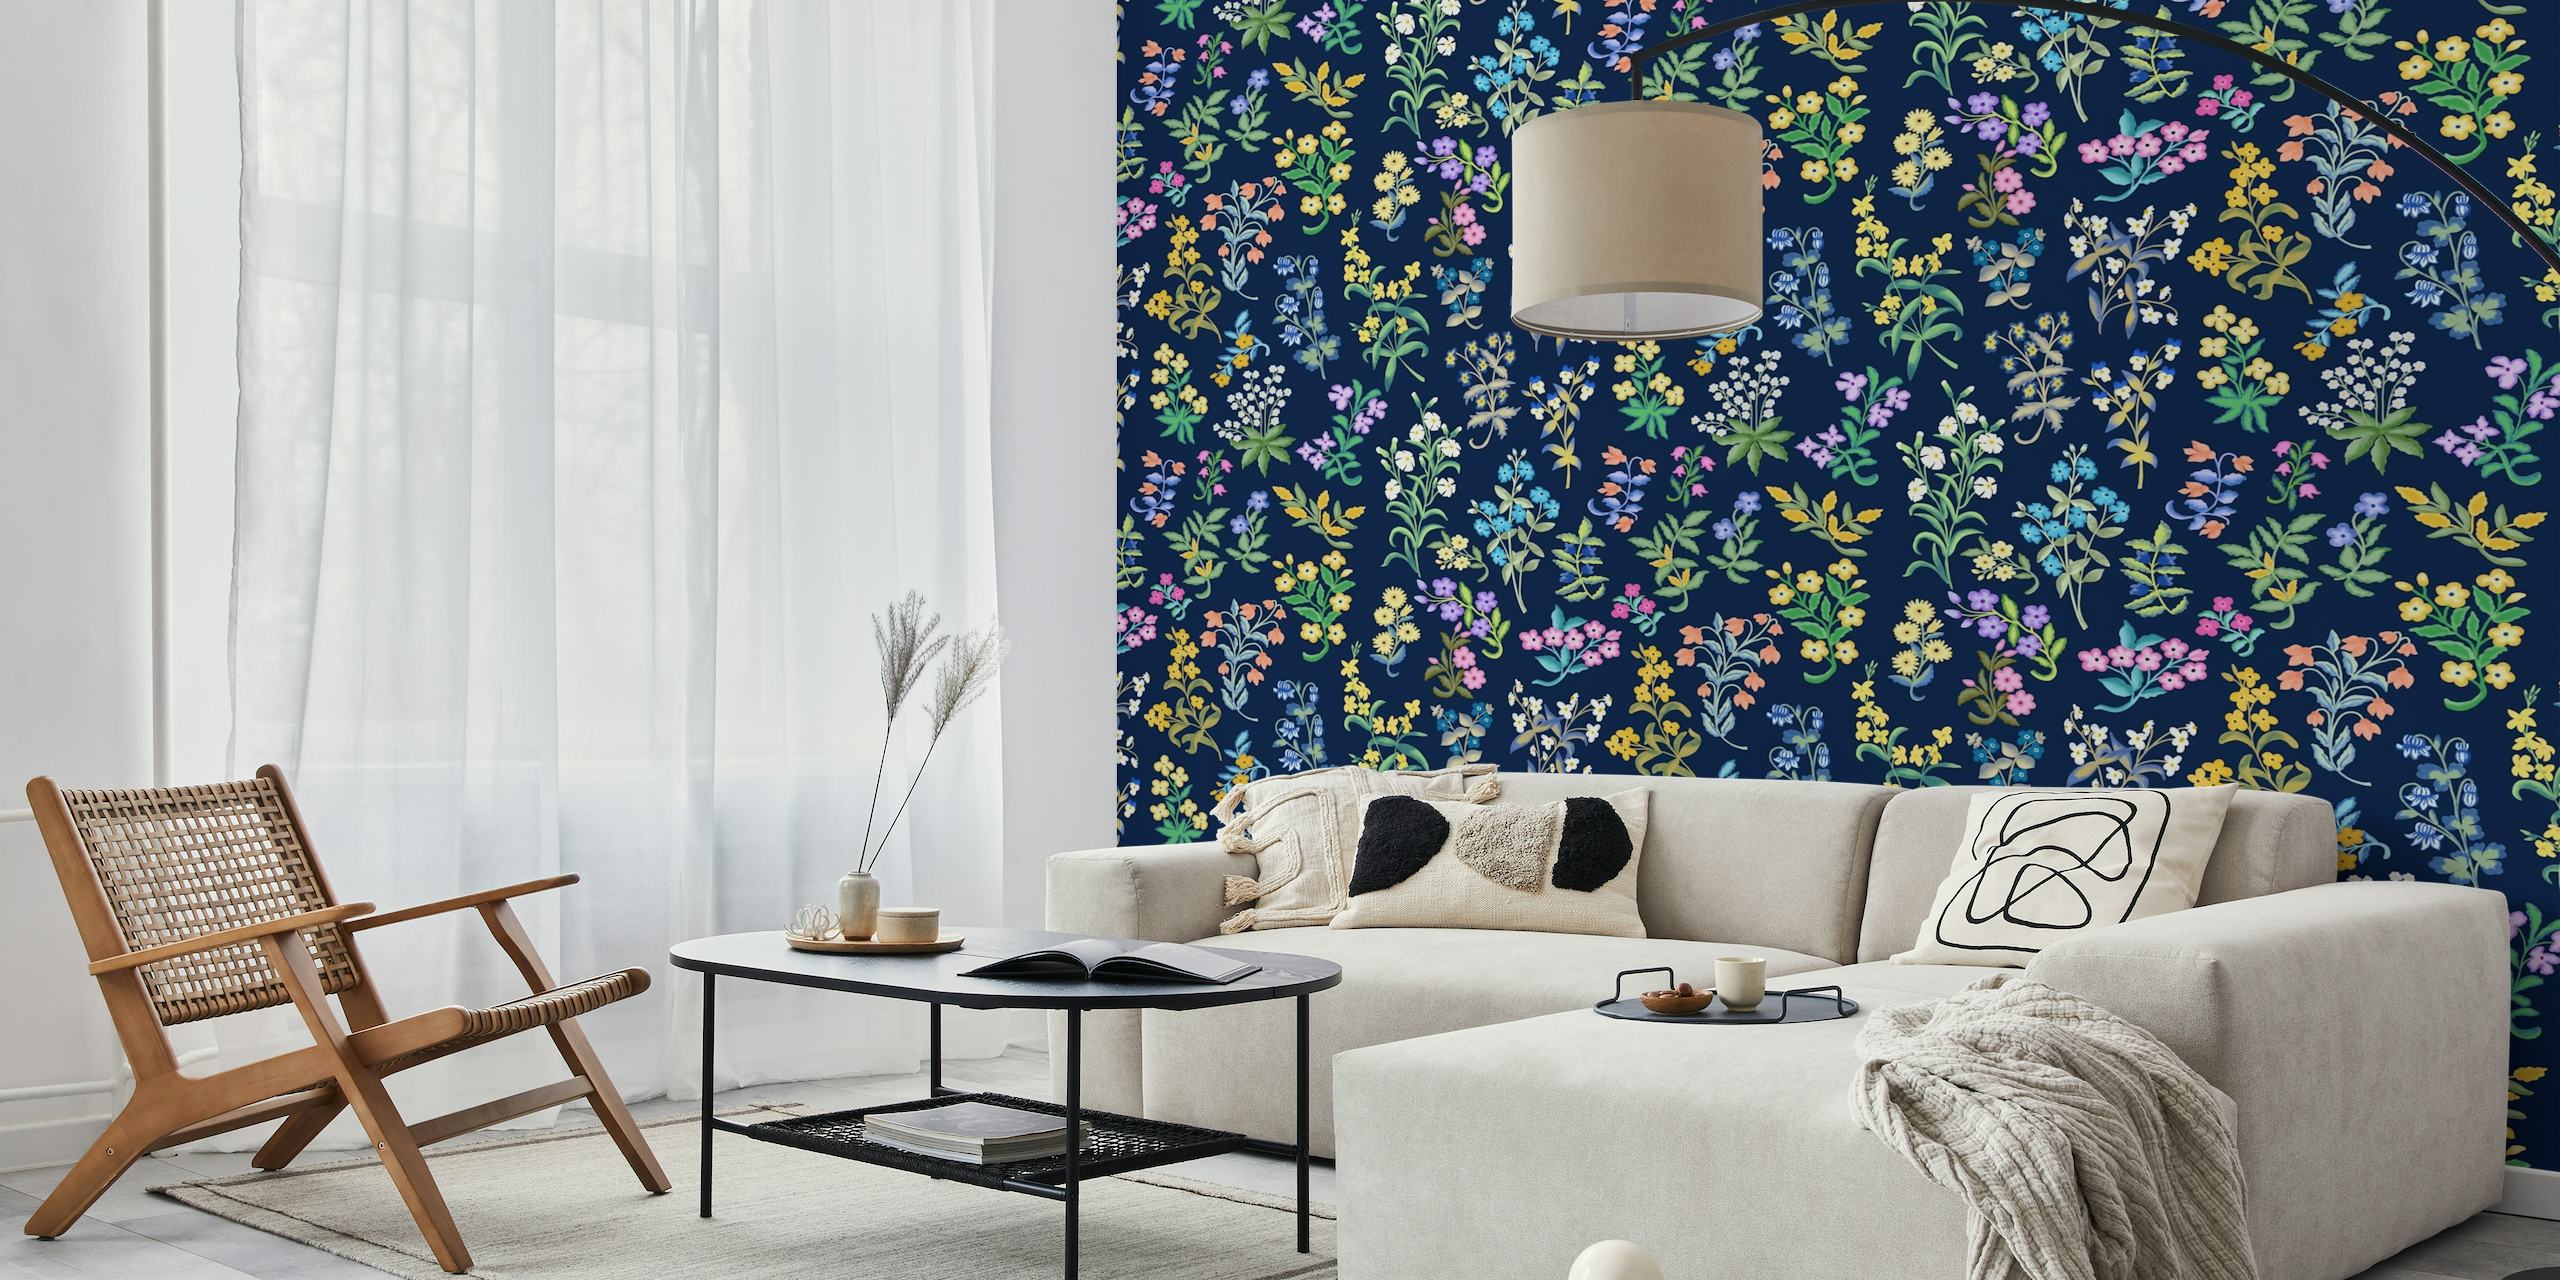 Millefleurspatroon met veelkleurige bloemen op een donkerblauwe muurschildering als achtergrond